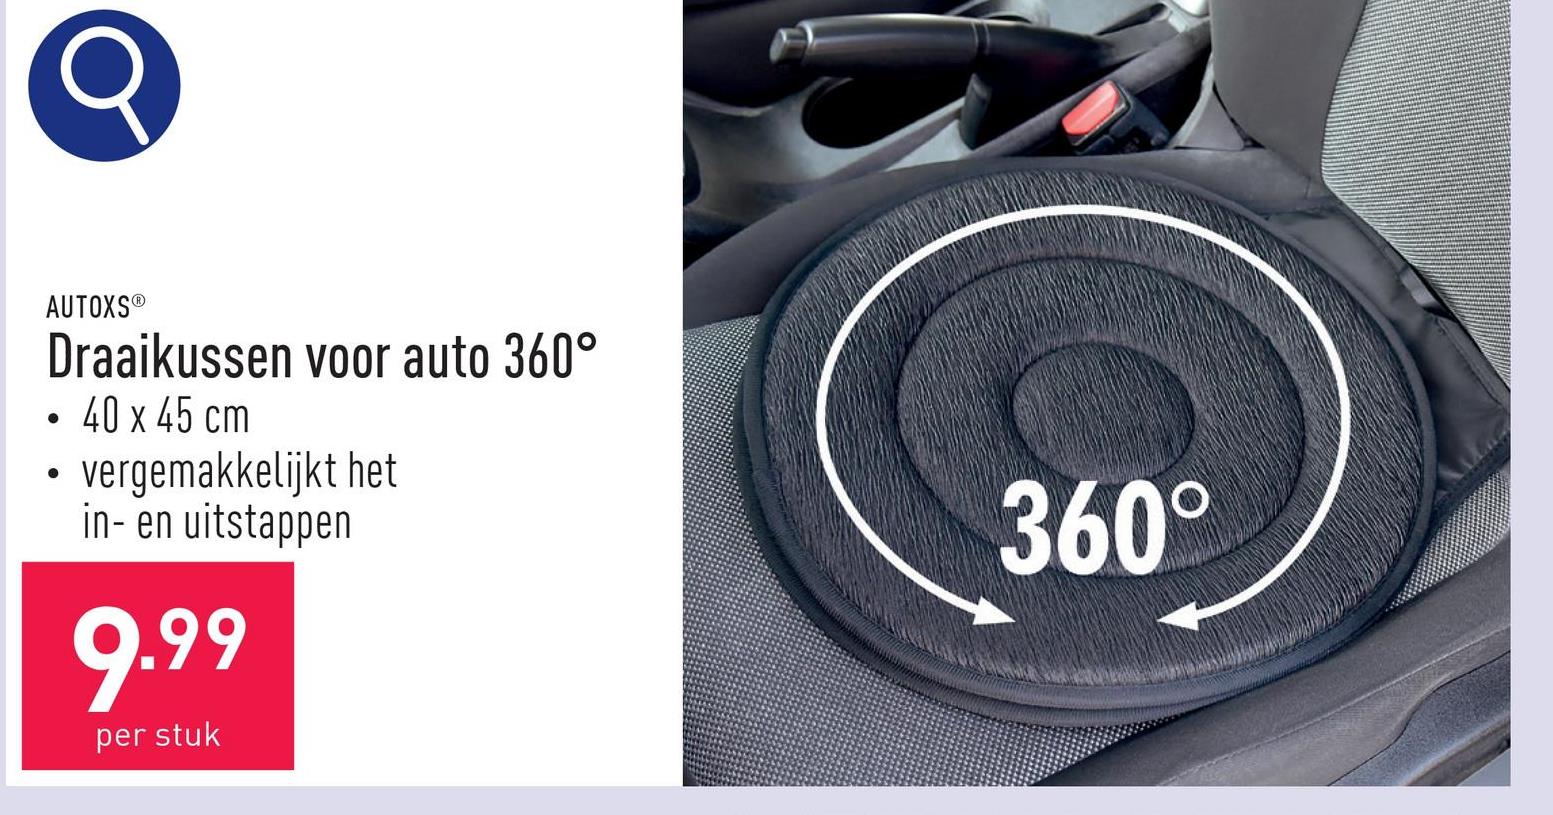 Draaikussen voor auto 360° 100 % polyester, gewatteerd, 360° draaifunctie, ca. 40 x 45 cm, vergemakkelijkt het in- en uitstappen, past op alle standaard autostoelen